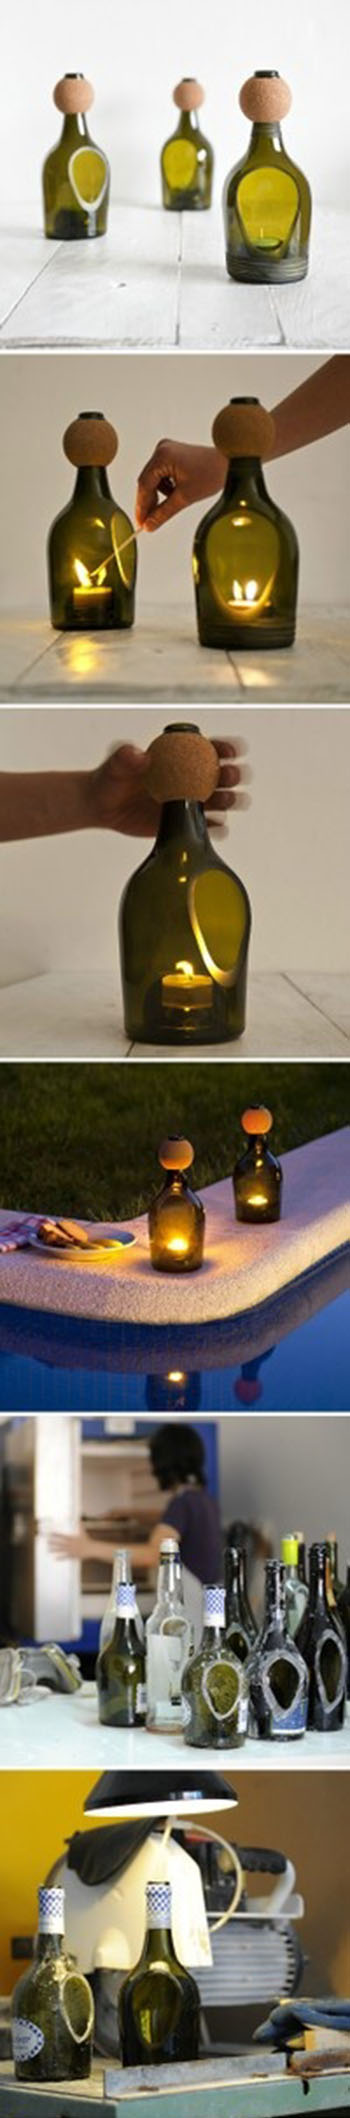 DIY Bottle Lantern11